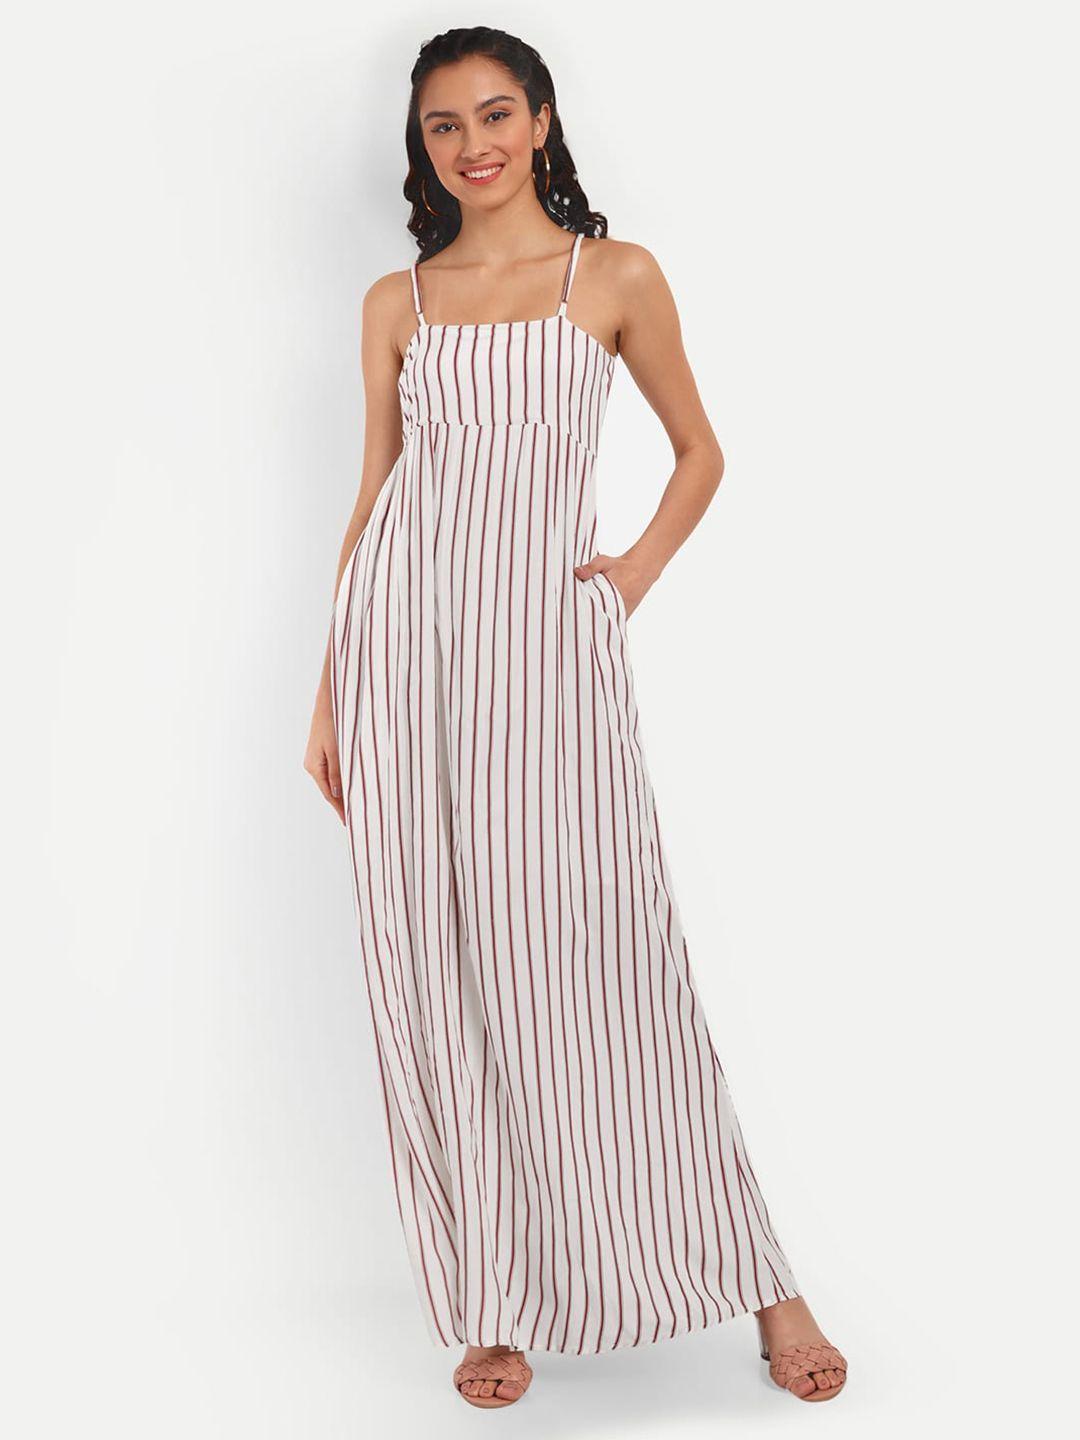 otorva white striped crepe maxi dress